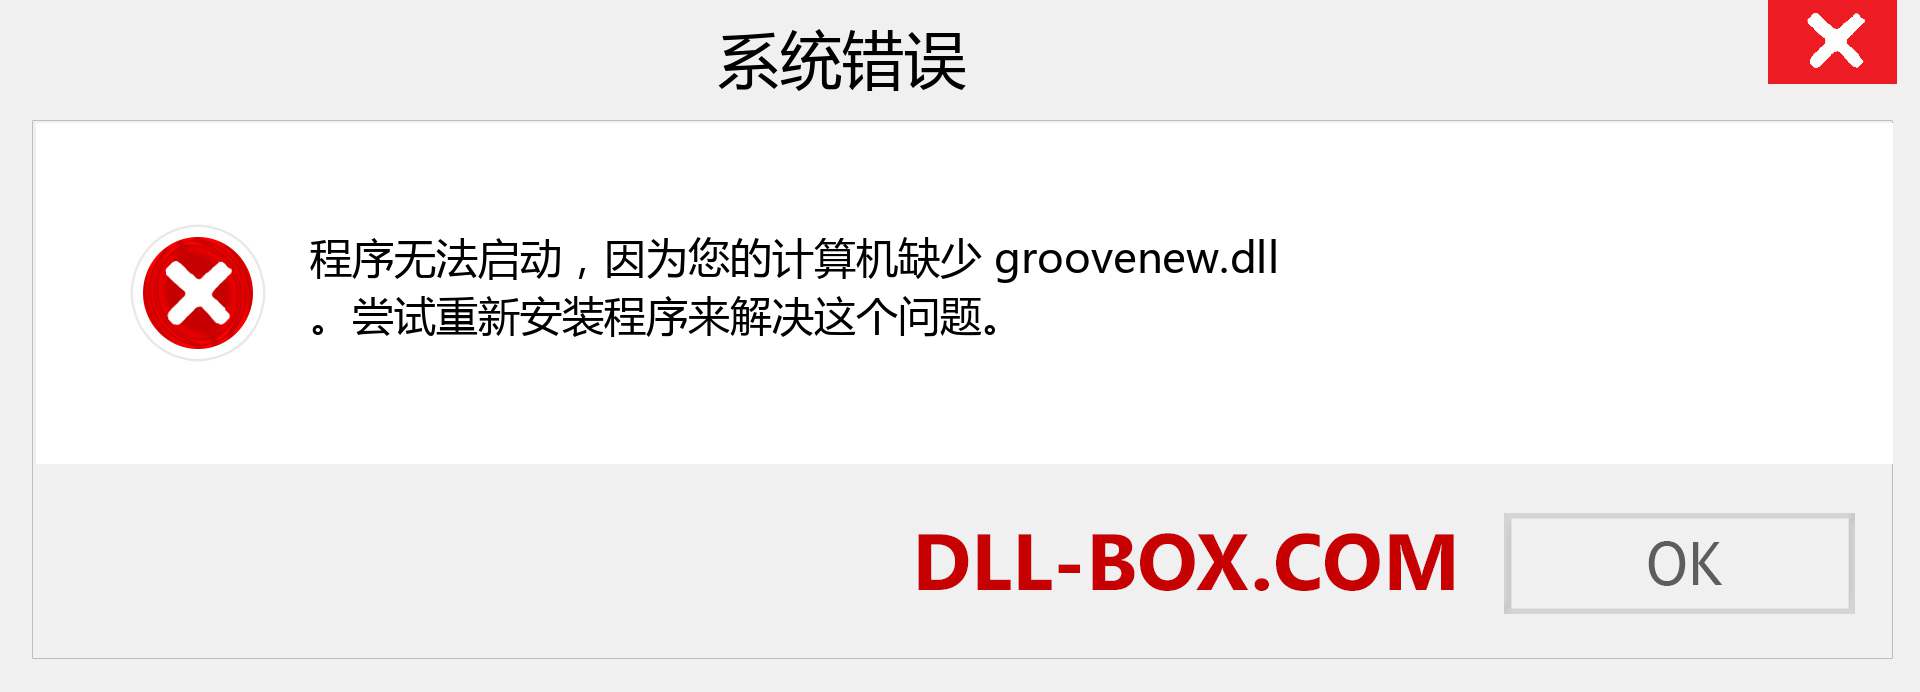 groovenew.dll 文件丢失？。 适用于 Windows 7、8、10 的下载 - 修复 Windows、照片、图像上的 groovenew dll 丢失错误